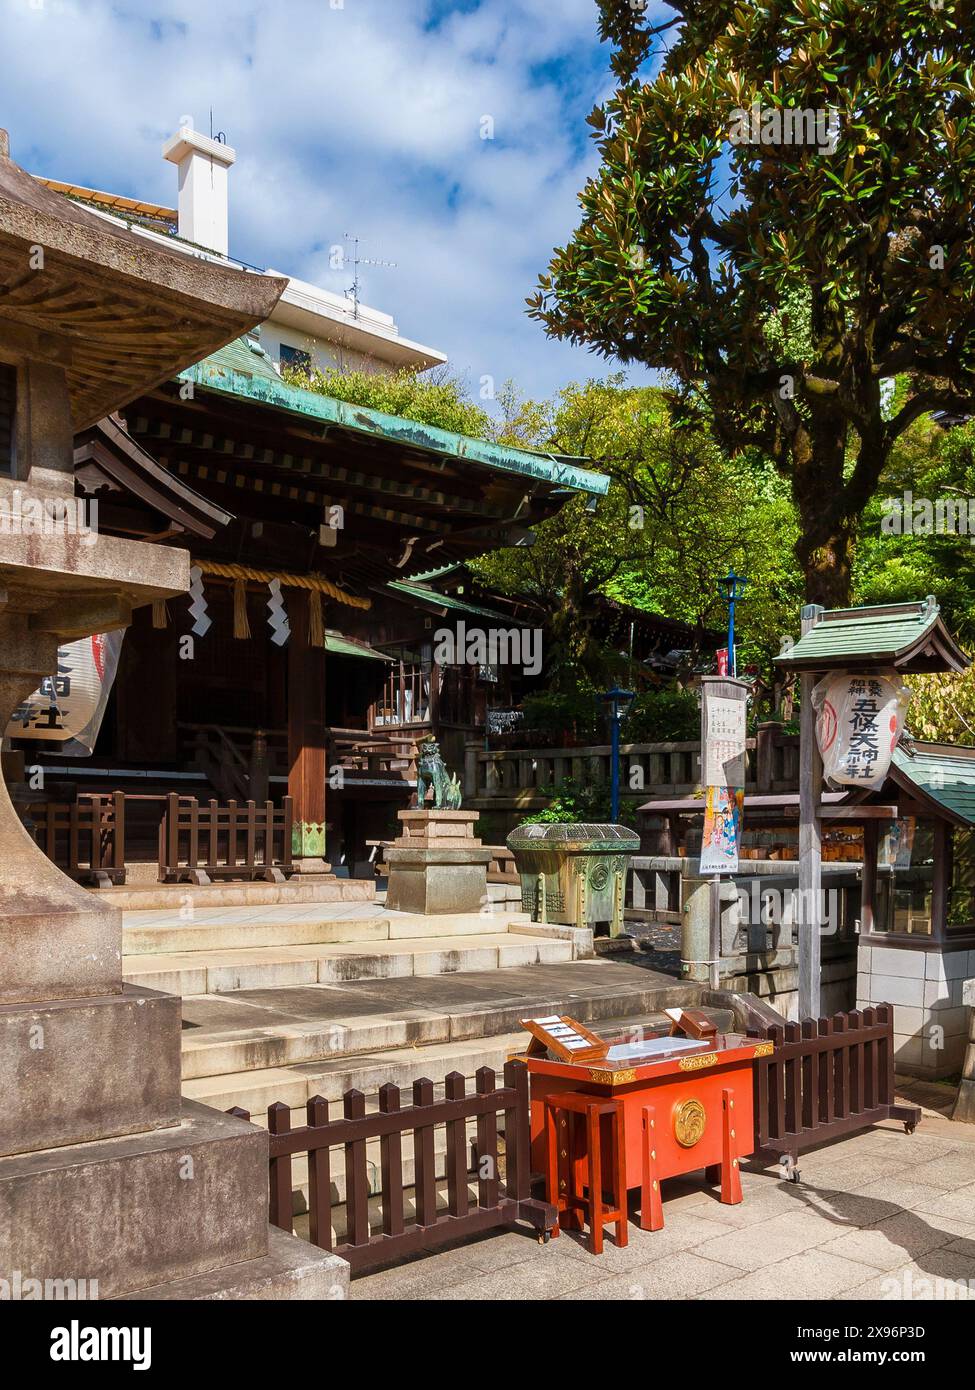 Religious architecture in Japan. Gojoten Shrine in Ueno Park in Tokyo Stock Photo